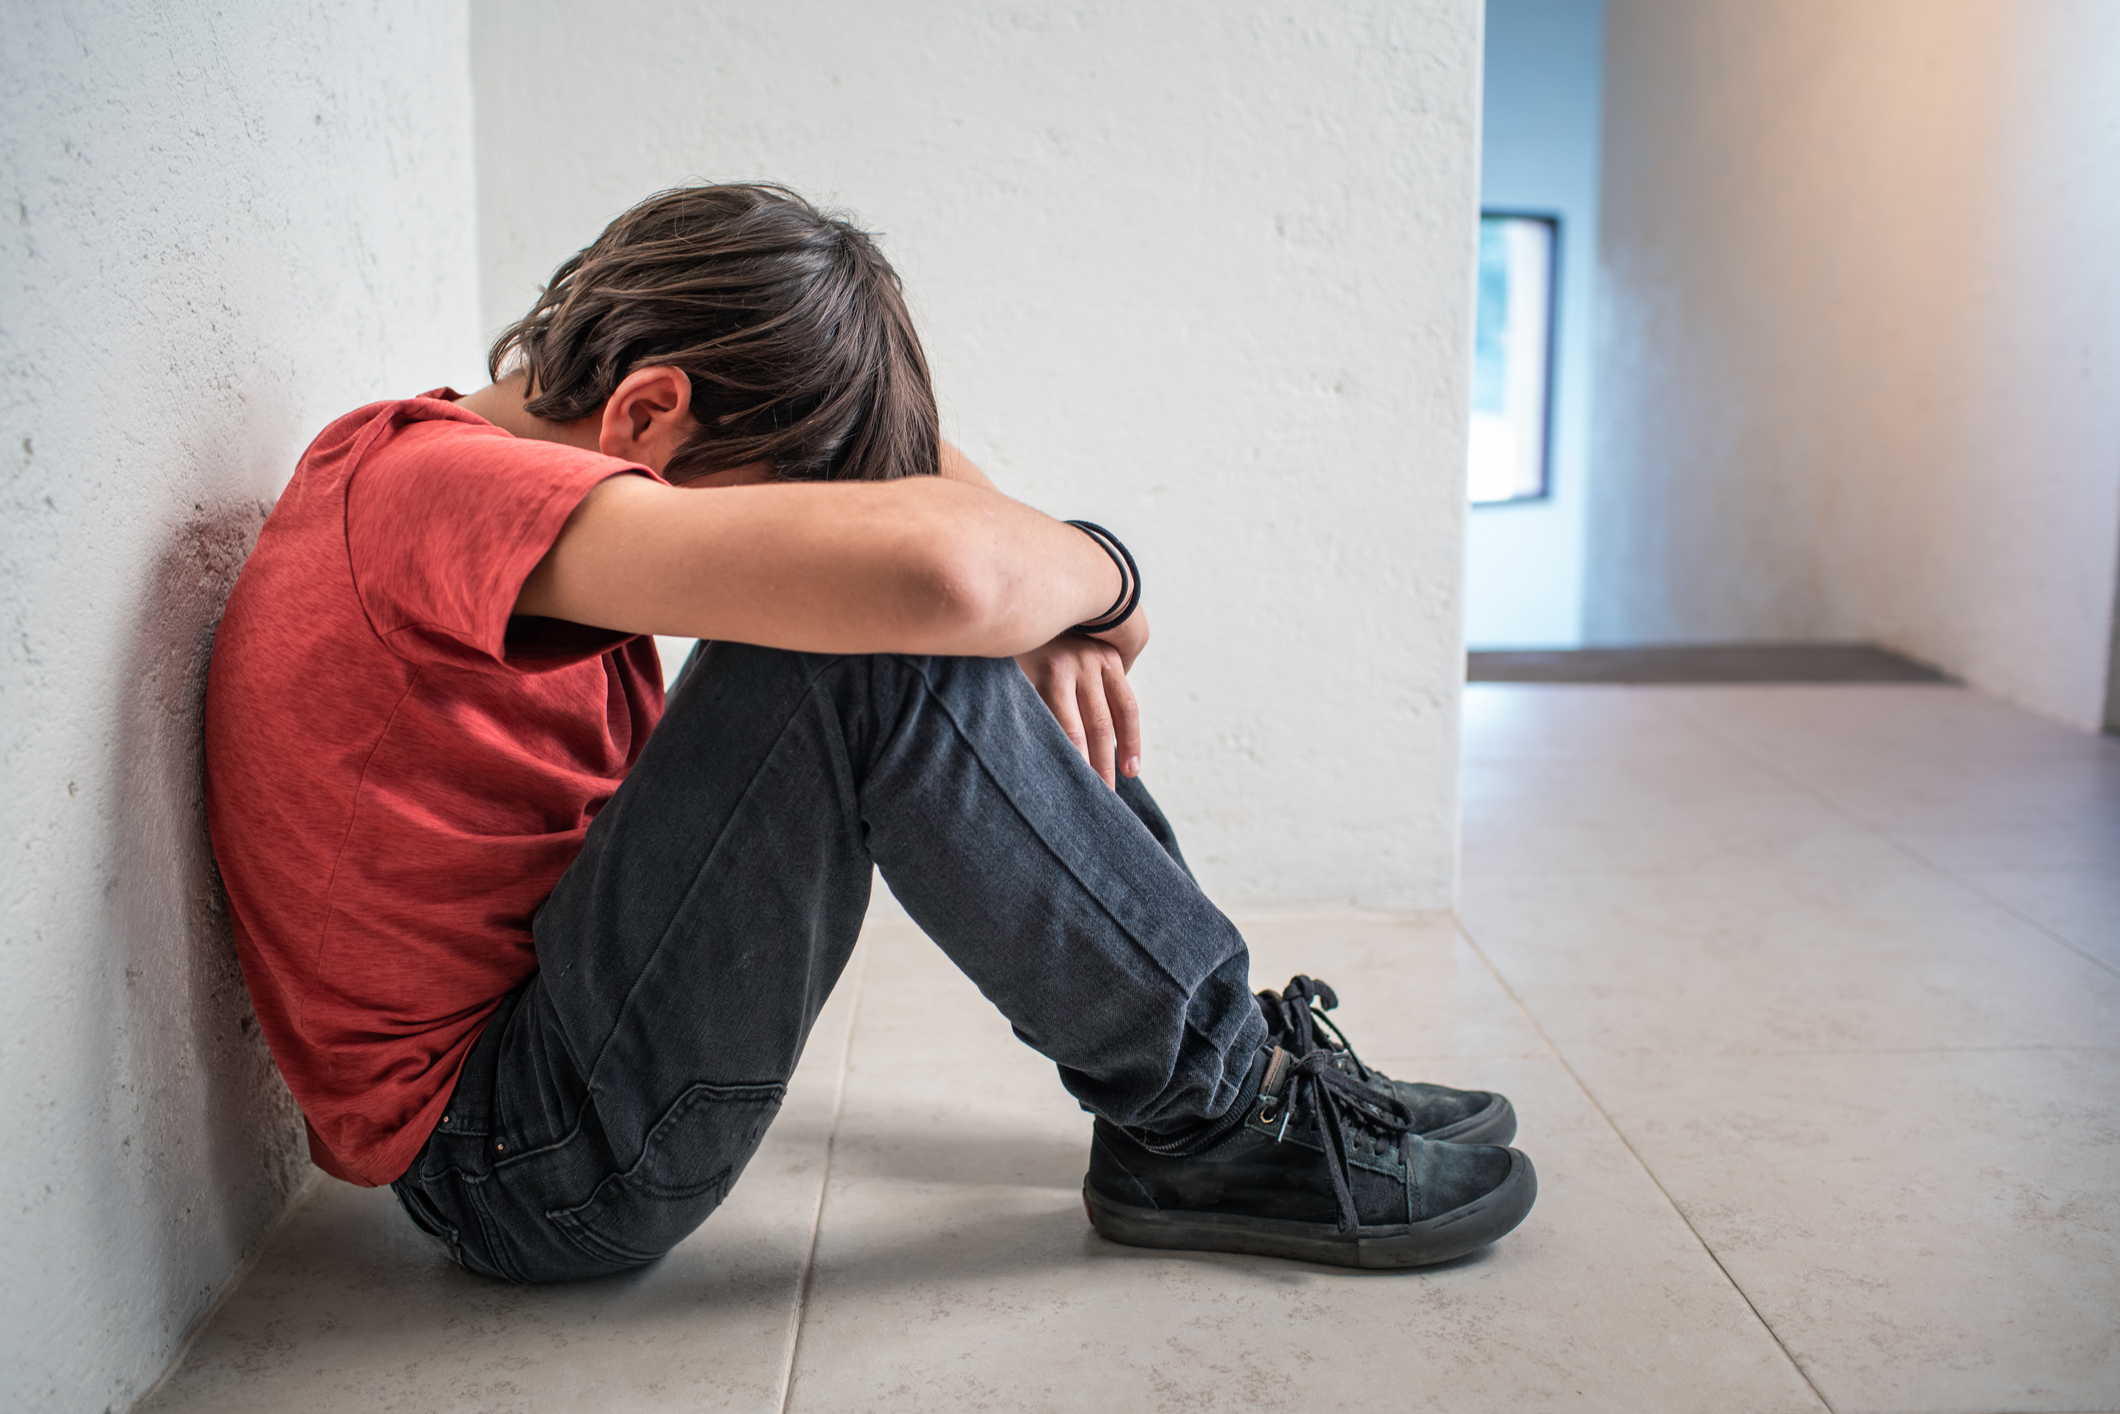 Μεσσηνία: Στη φυλακή για παρενόχληση 8χρονου αγοριού – Τι καταλογίζεται στον 62χρονο